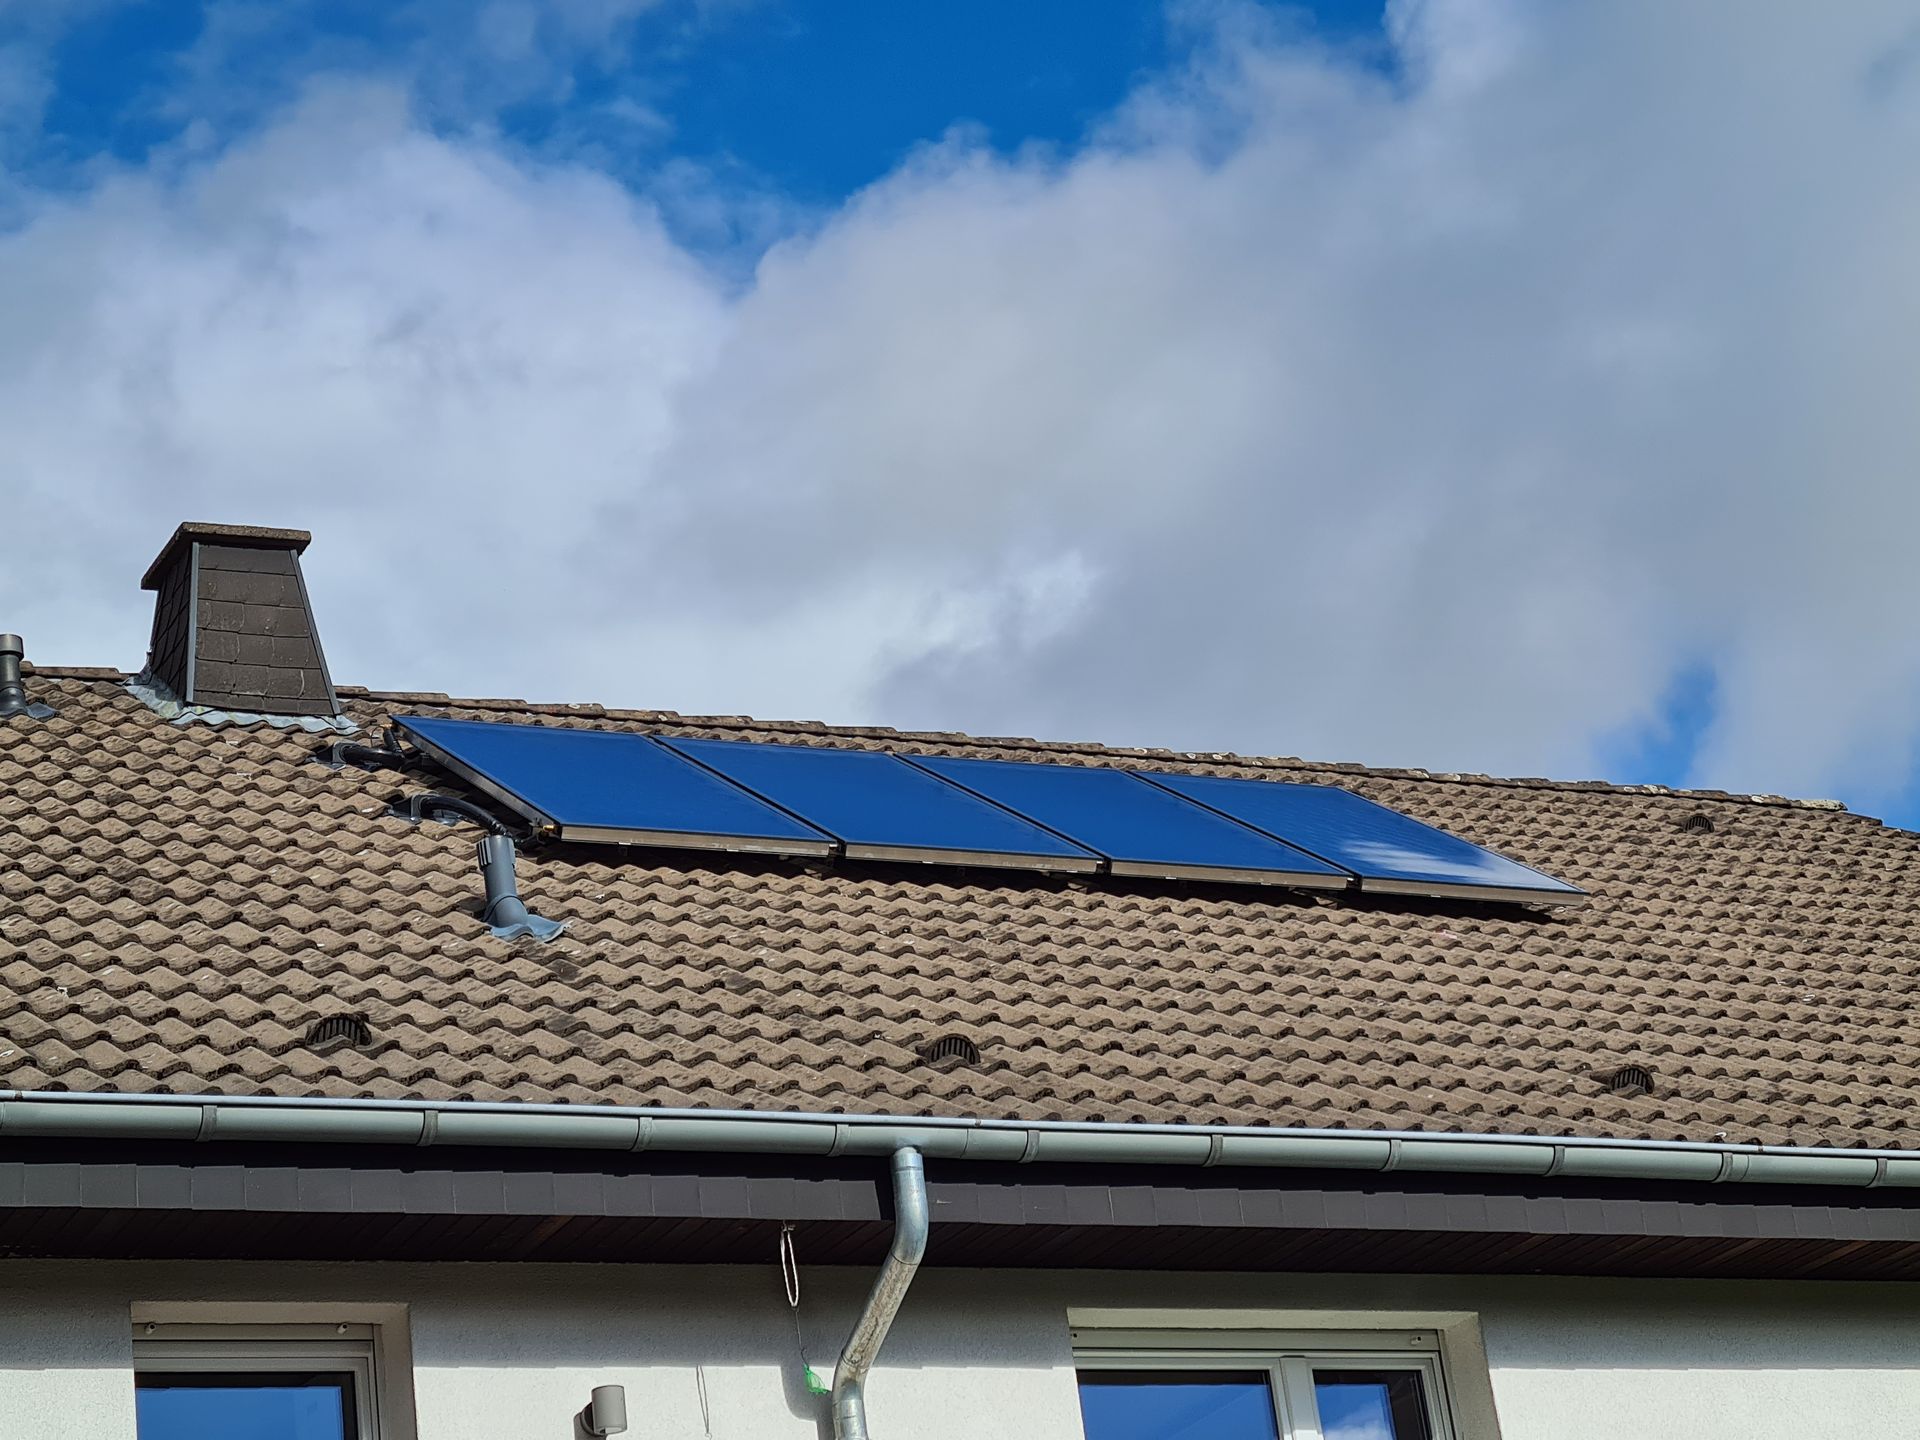 Solaranlage auf Einfamilienhaus